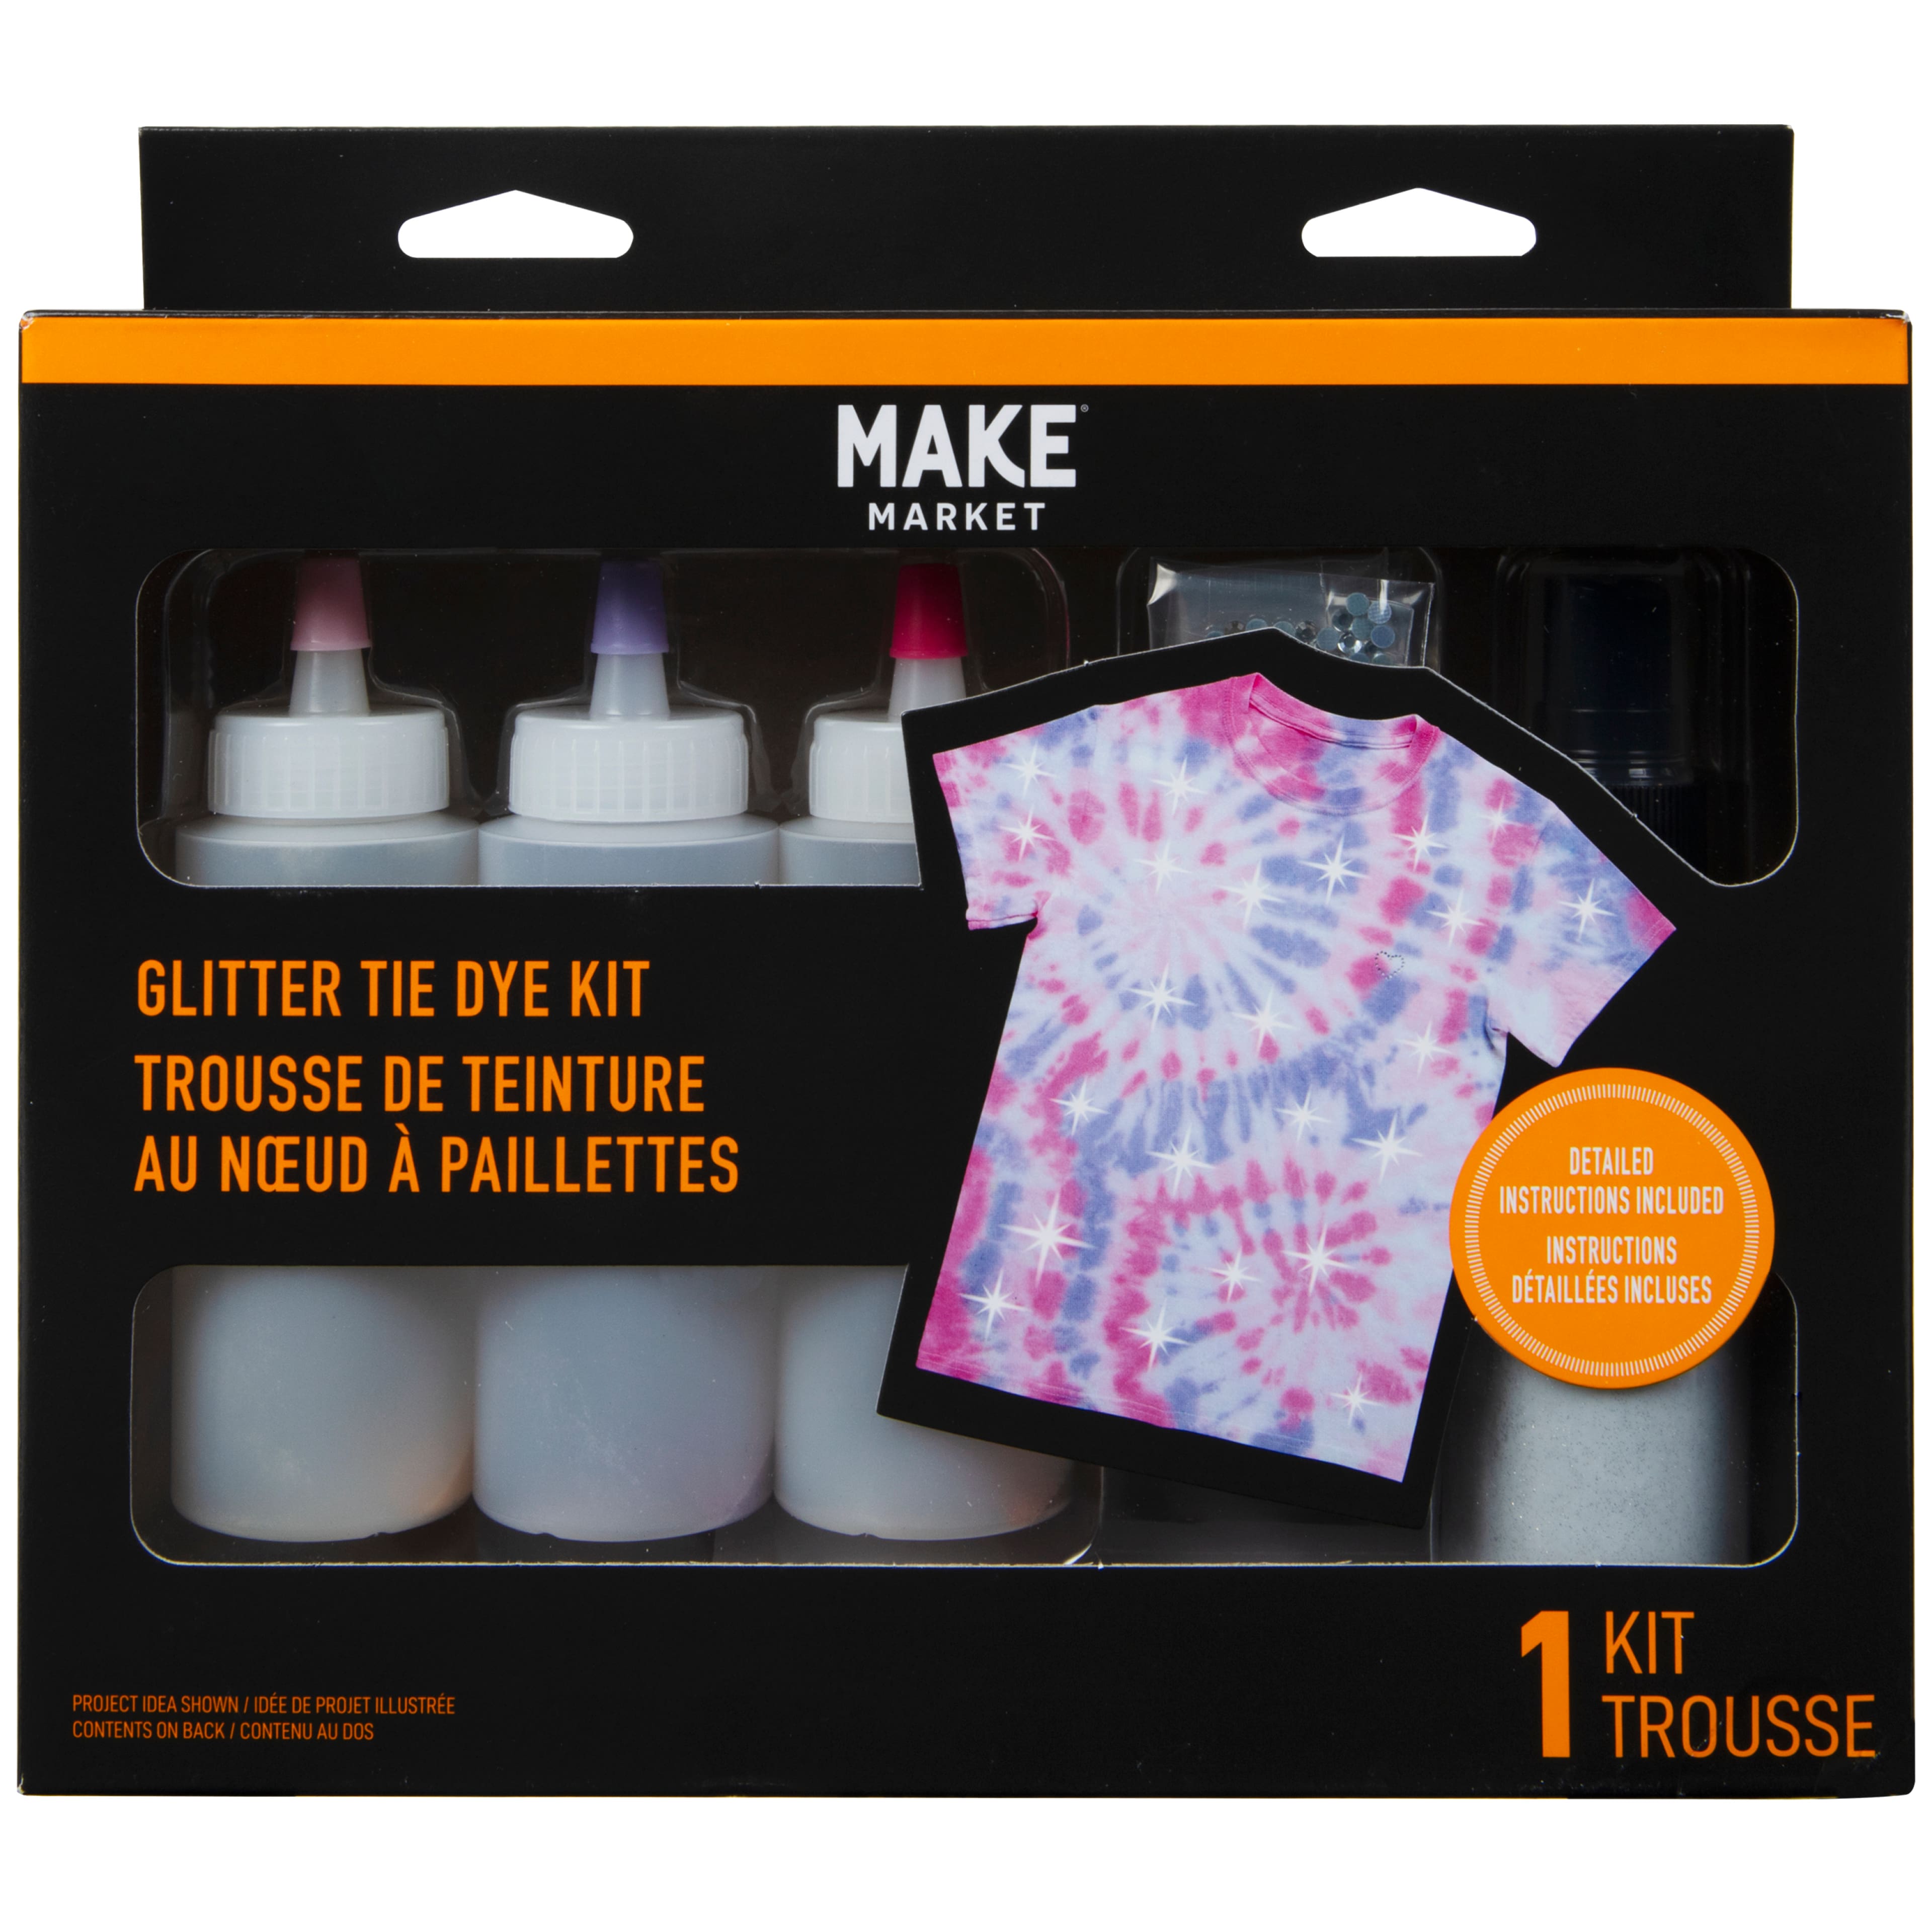 Tie Dye Kit, Fabric Dye, Tie Dye DIY T-Shirt Set, All-in-1 DIY Fashion Dye  Kit - 12 Colors Tie Dye + 4 White T-Shirt